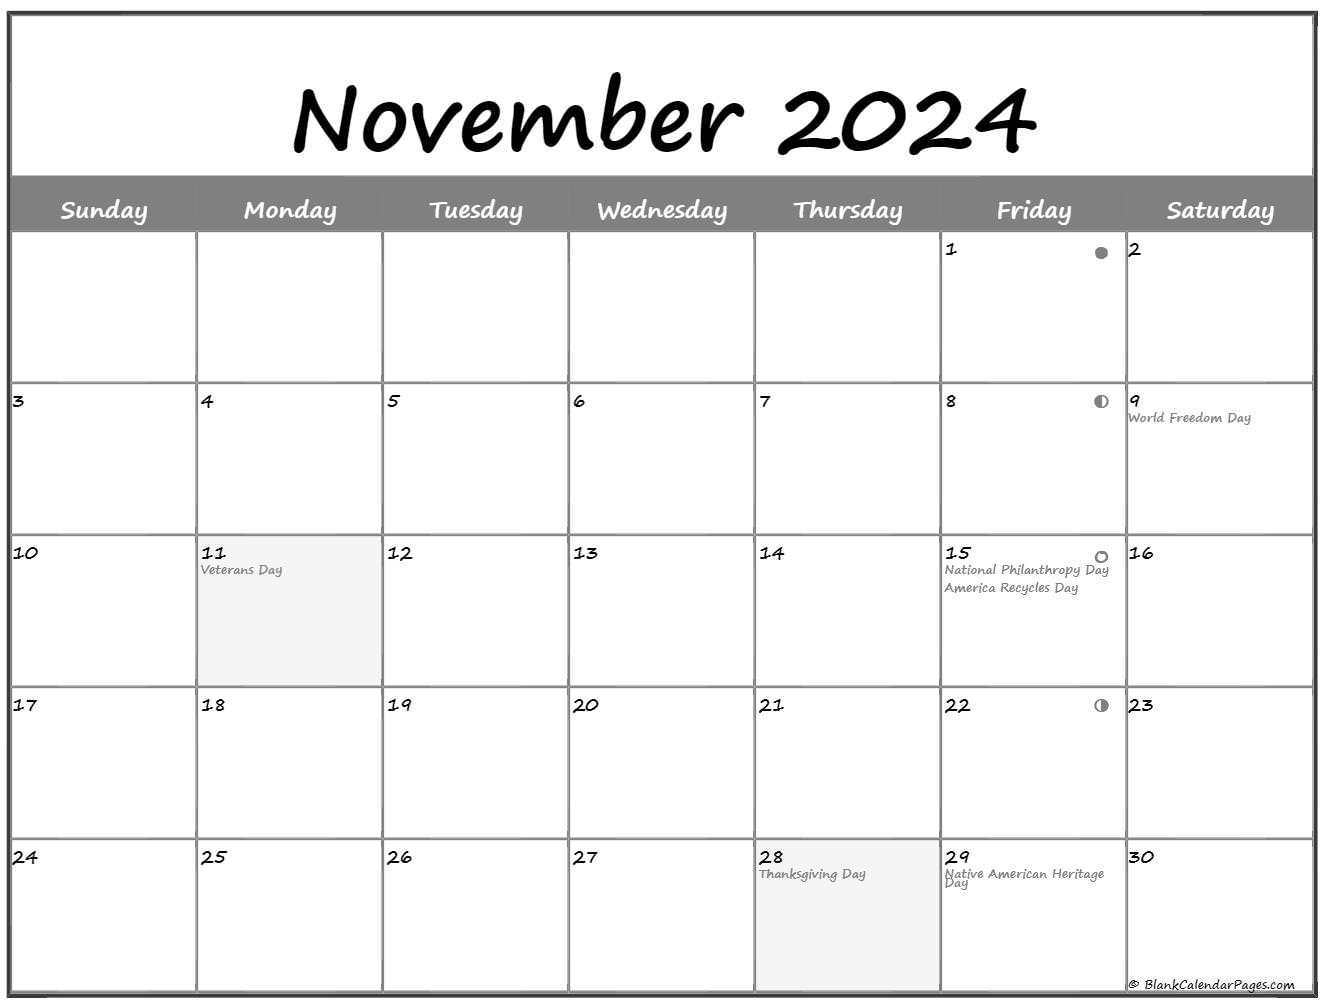 November 2022 Lunar Calendar | Moon Phase Calendar